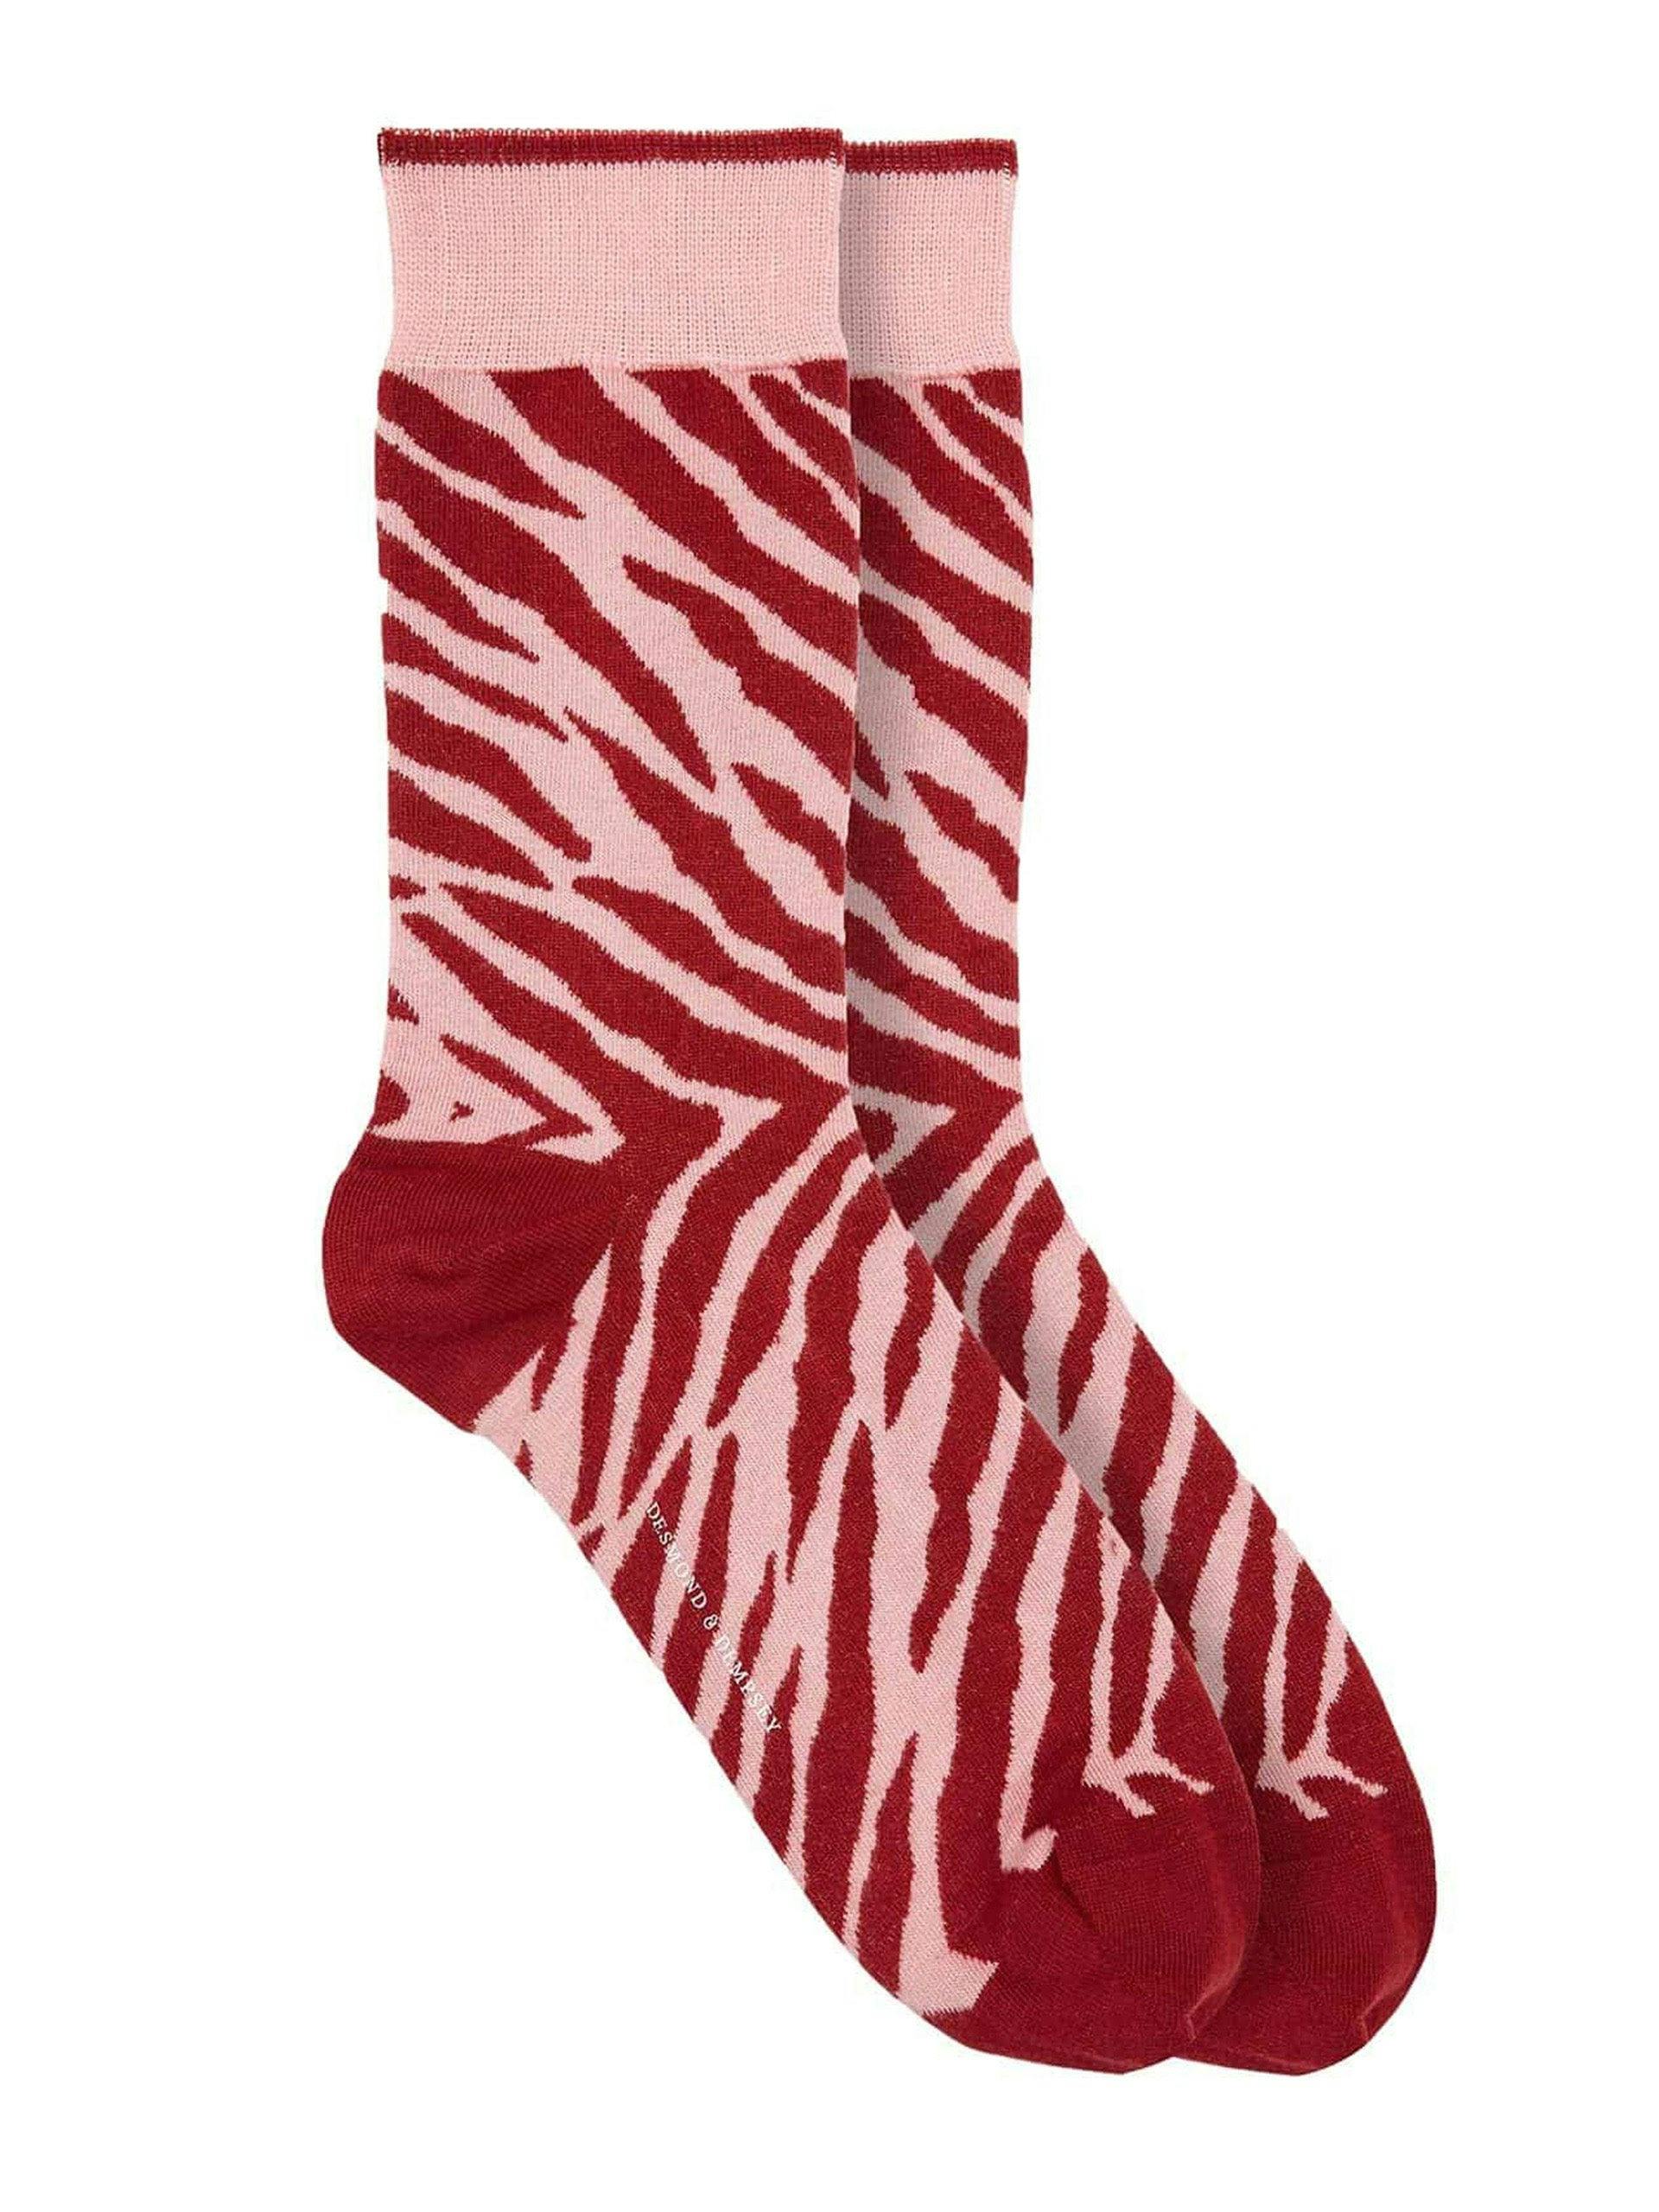 Women's Zebra pattern socks